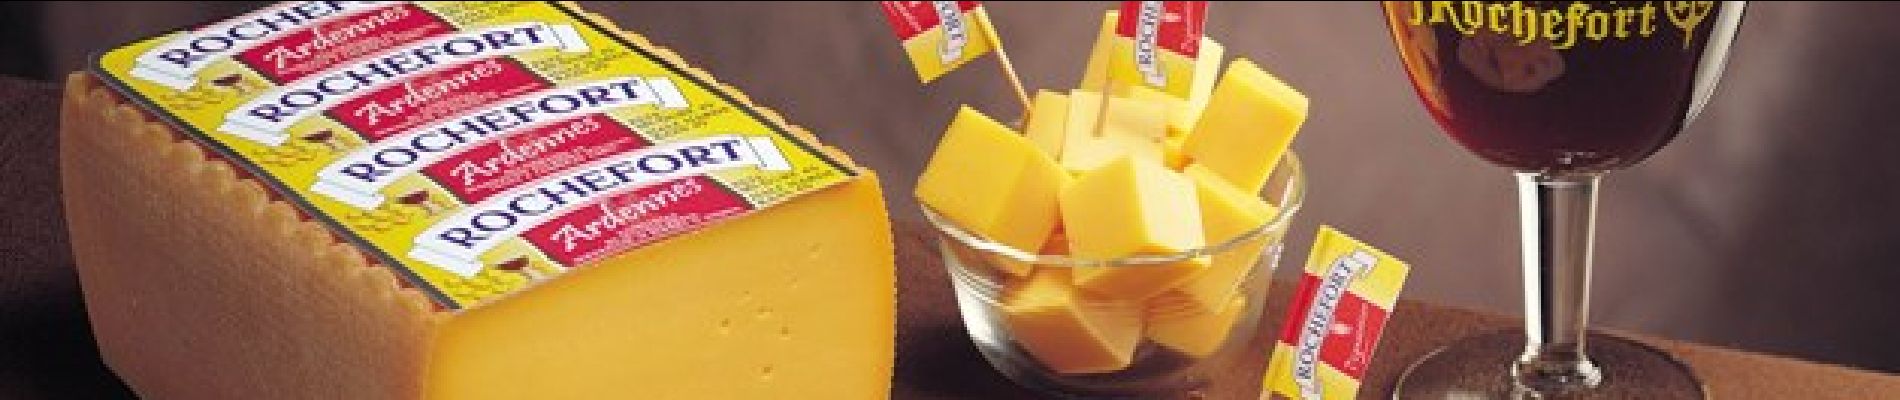 Point of interest Rochefort - Rochefort cheese - Photo